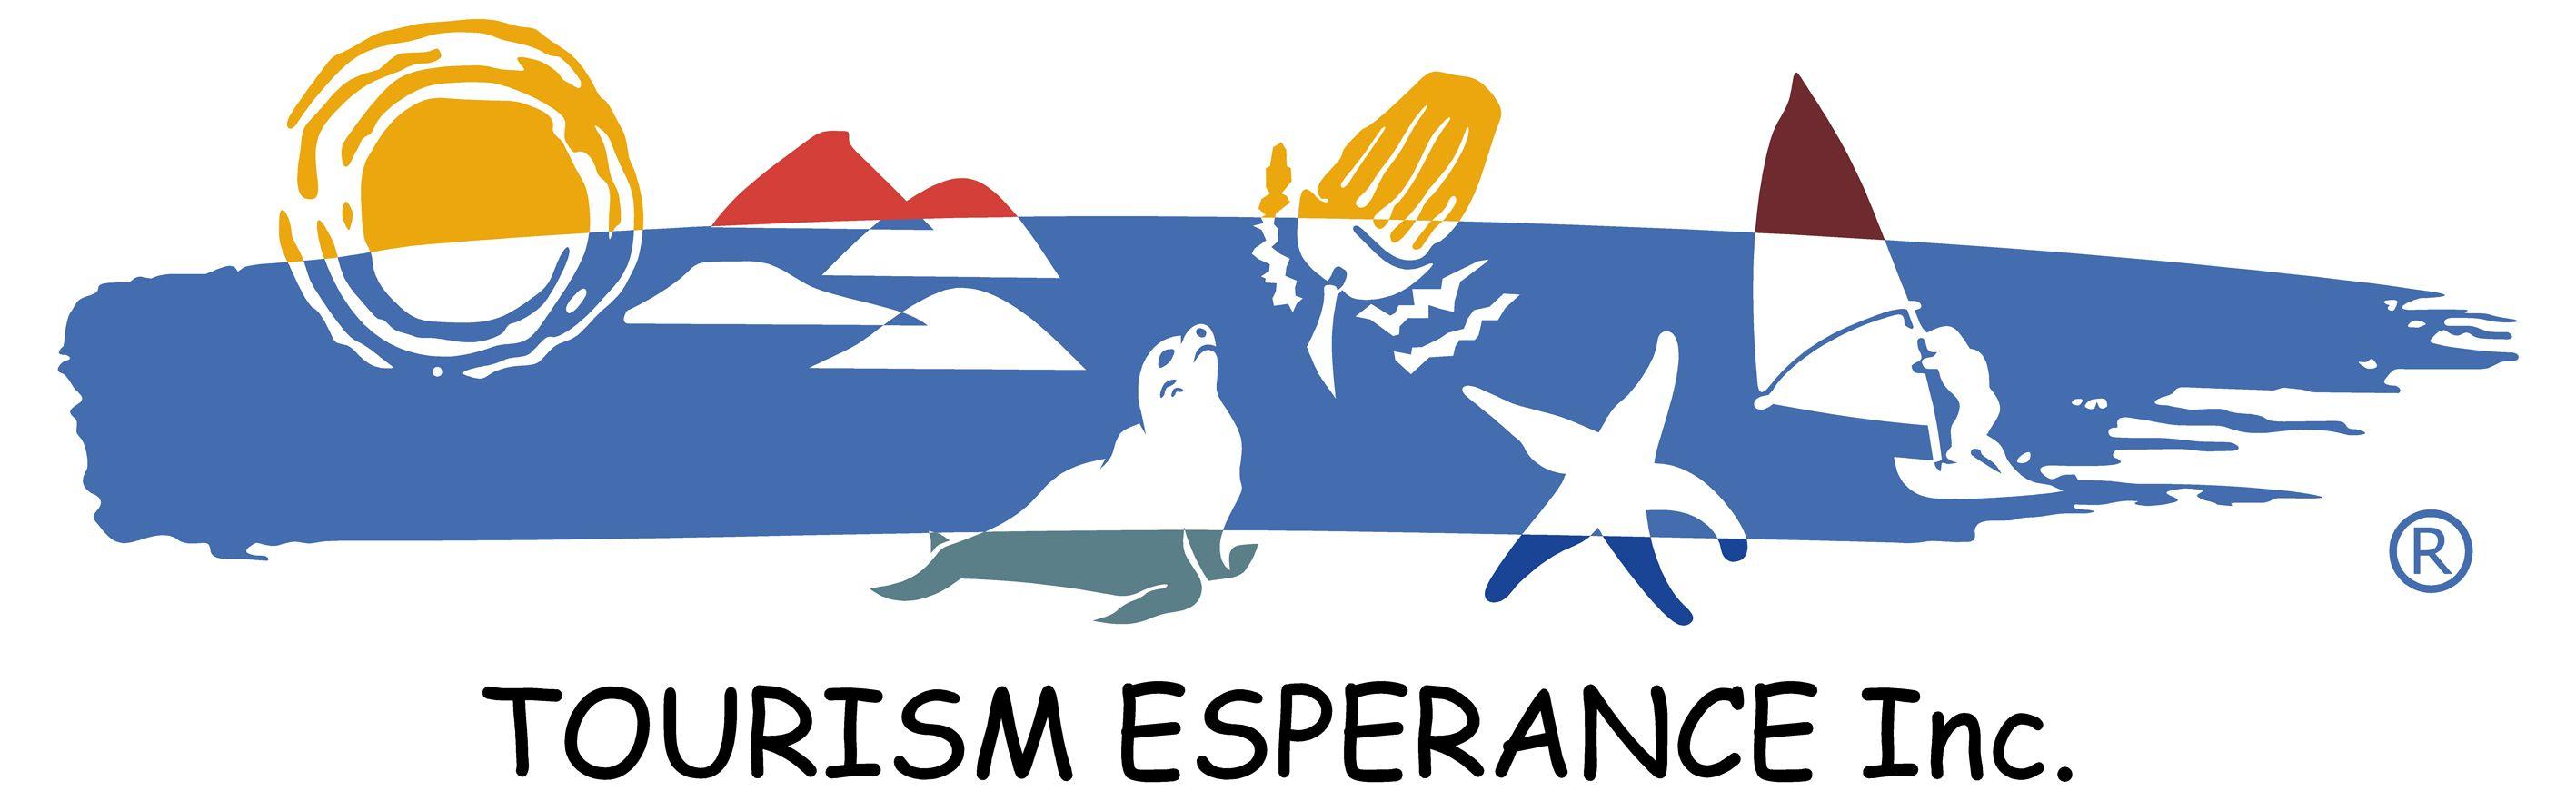 Tourism Australia Logo - ABOUT TOURISM ESPERANCE – Tourism Esperance